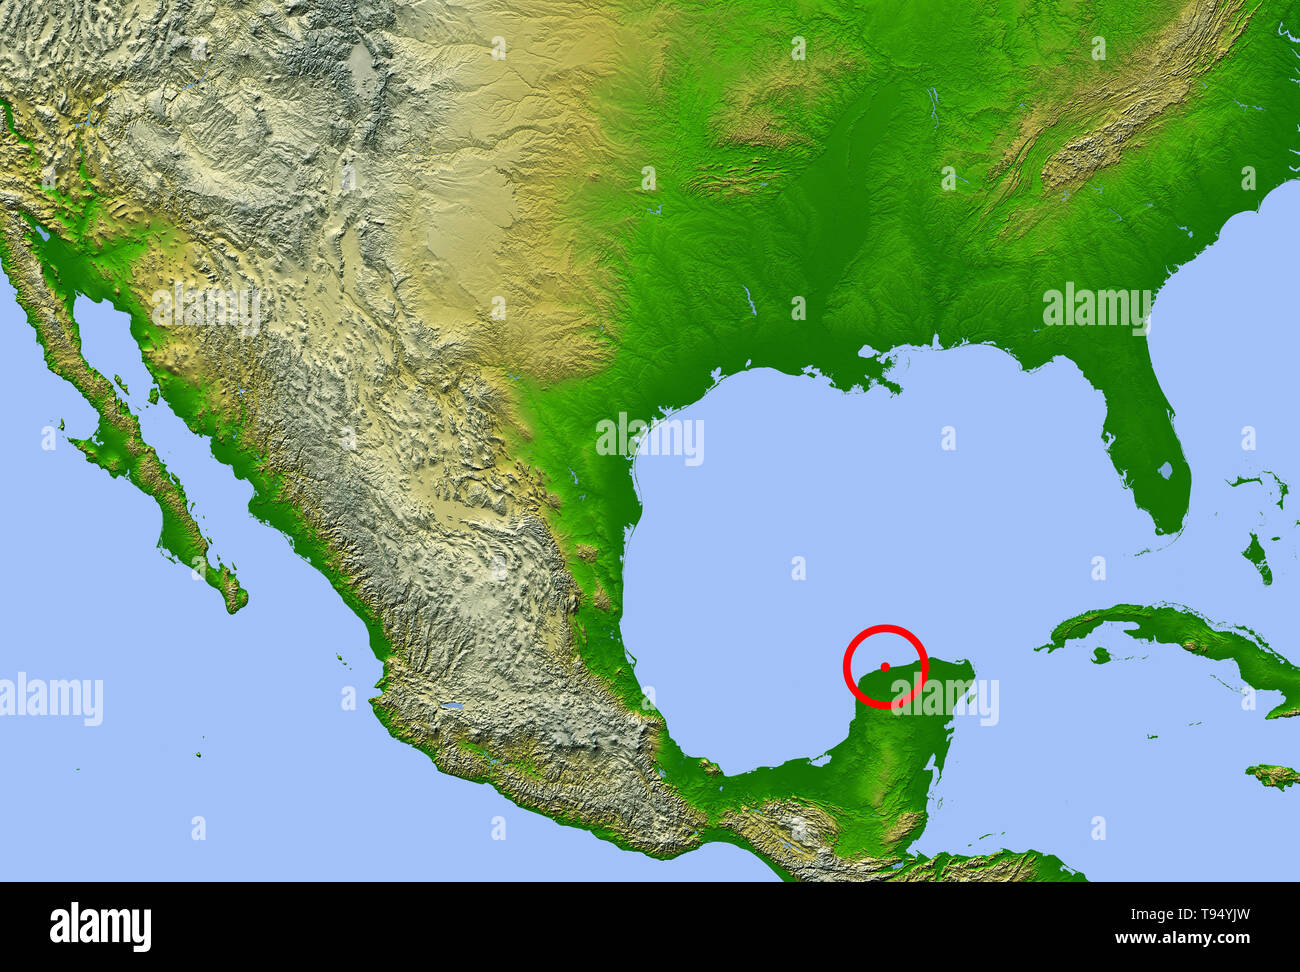 Cráter de Chicxulub. Mapa que muestra la ubicación del cráter de impacto de Chicxulub (centro) en la península de Yucatán, México. Este impacto podría haber causado la extinción de los dinosaurios y el 70% de todas las especies de la Tierra hace 65 millones de años. Los cuatro puntos rojos representan las ciudades de (de izquierda a derecha): Ciudad de México, Tempico (donde el material expulsado del cráter se ha encontrado), La Habana y Miami. Foto de stock